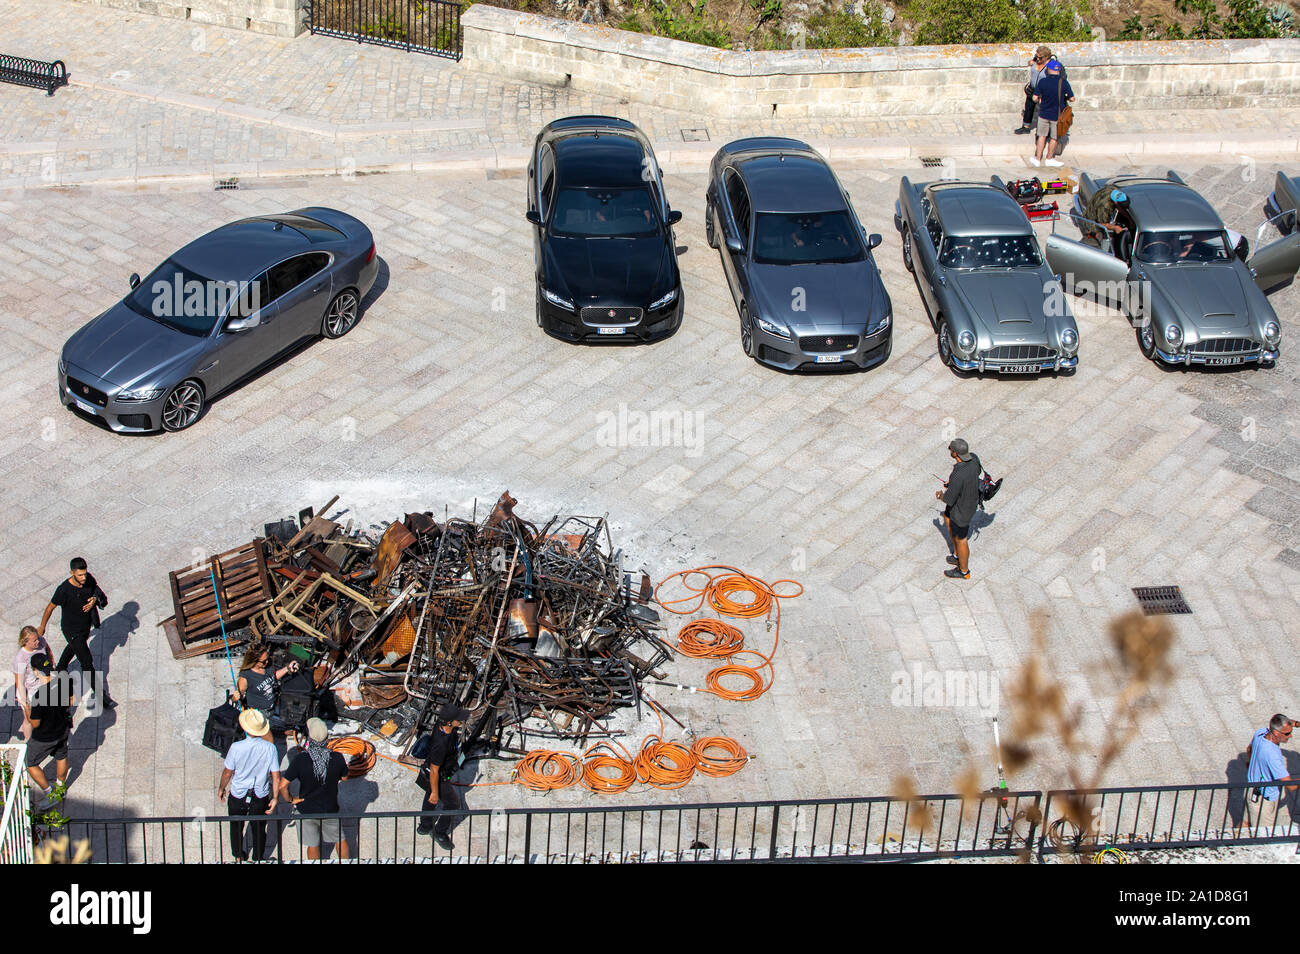 Matera, Italien - September 15, 2019: Bond 25, Aston Martin DB5 und Jaguar Cars bereit, die Szenen aus dem Film "keine Zeit" in Sassi, Matera, Italien zu sterben, um zu schießen. Stockfoto